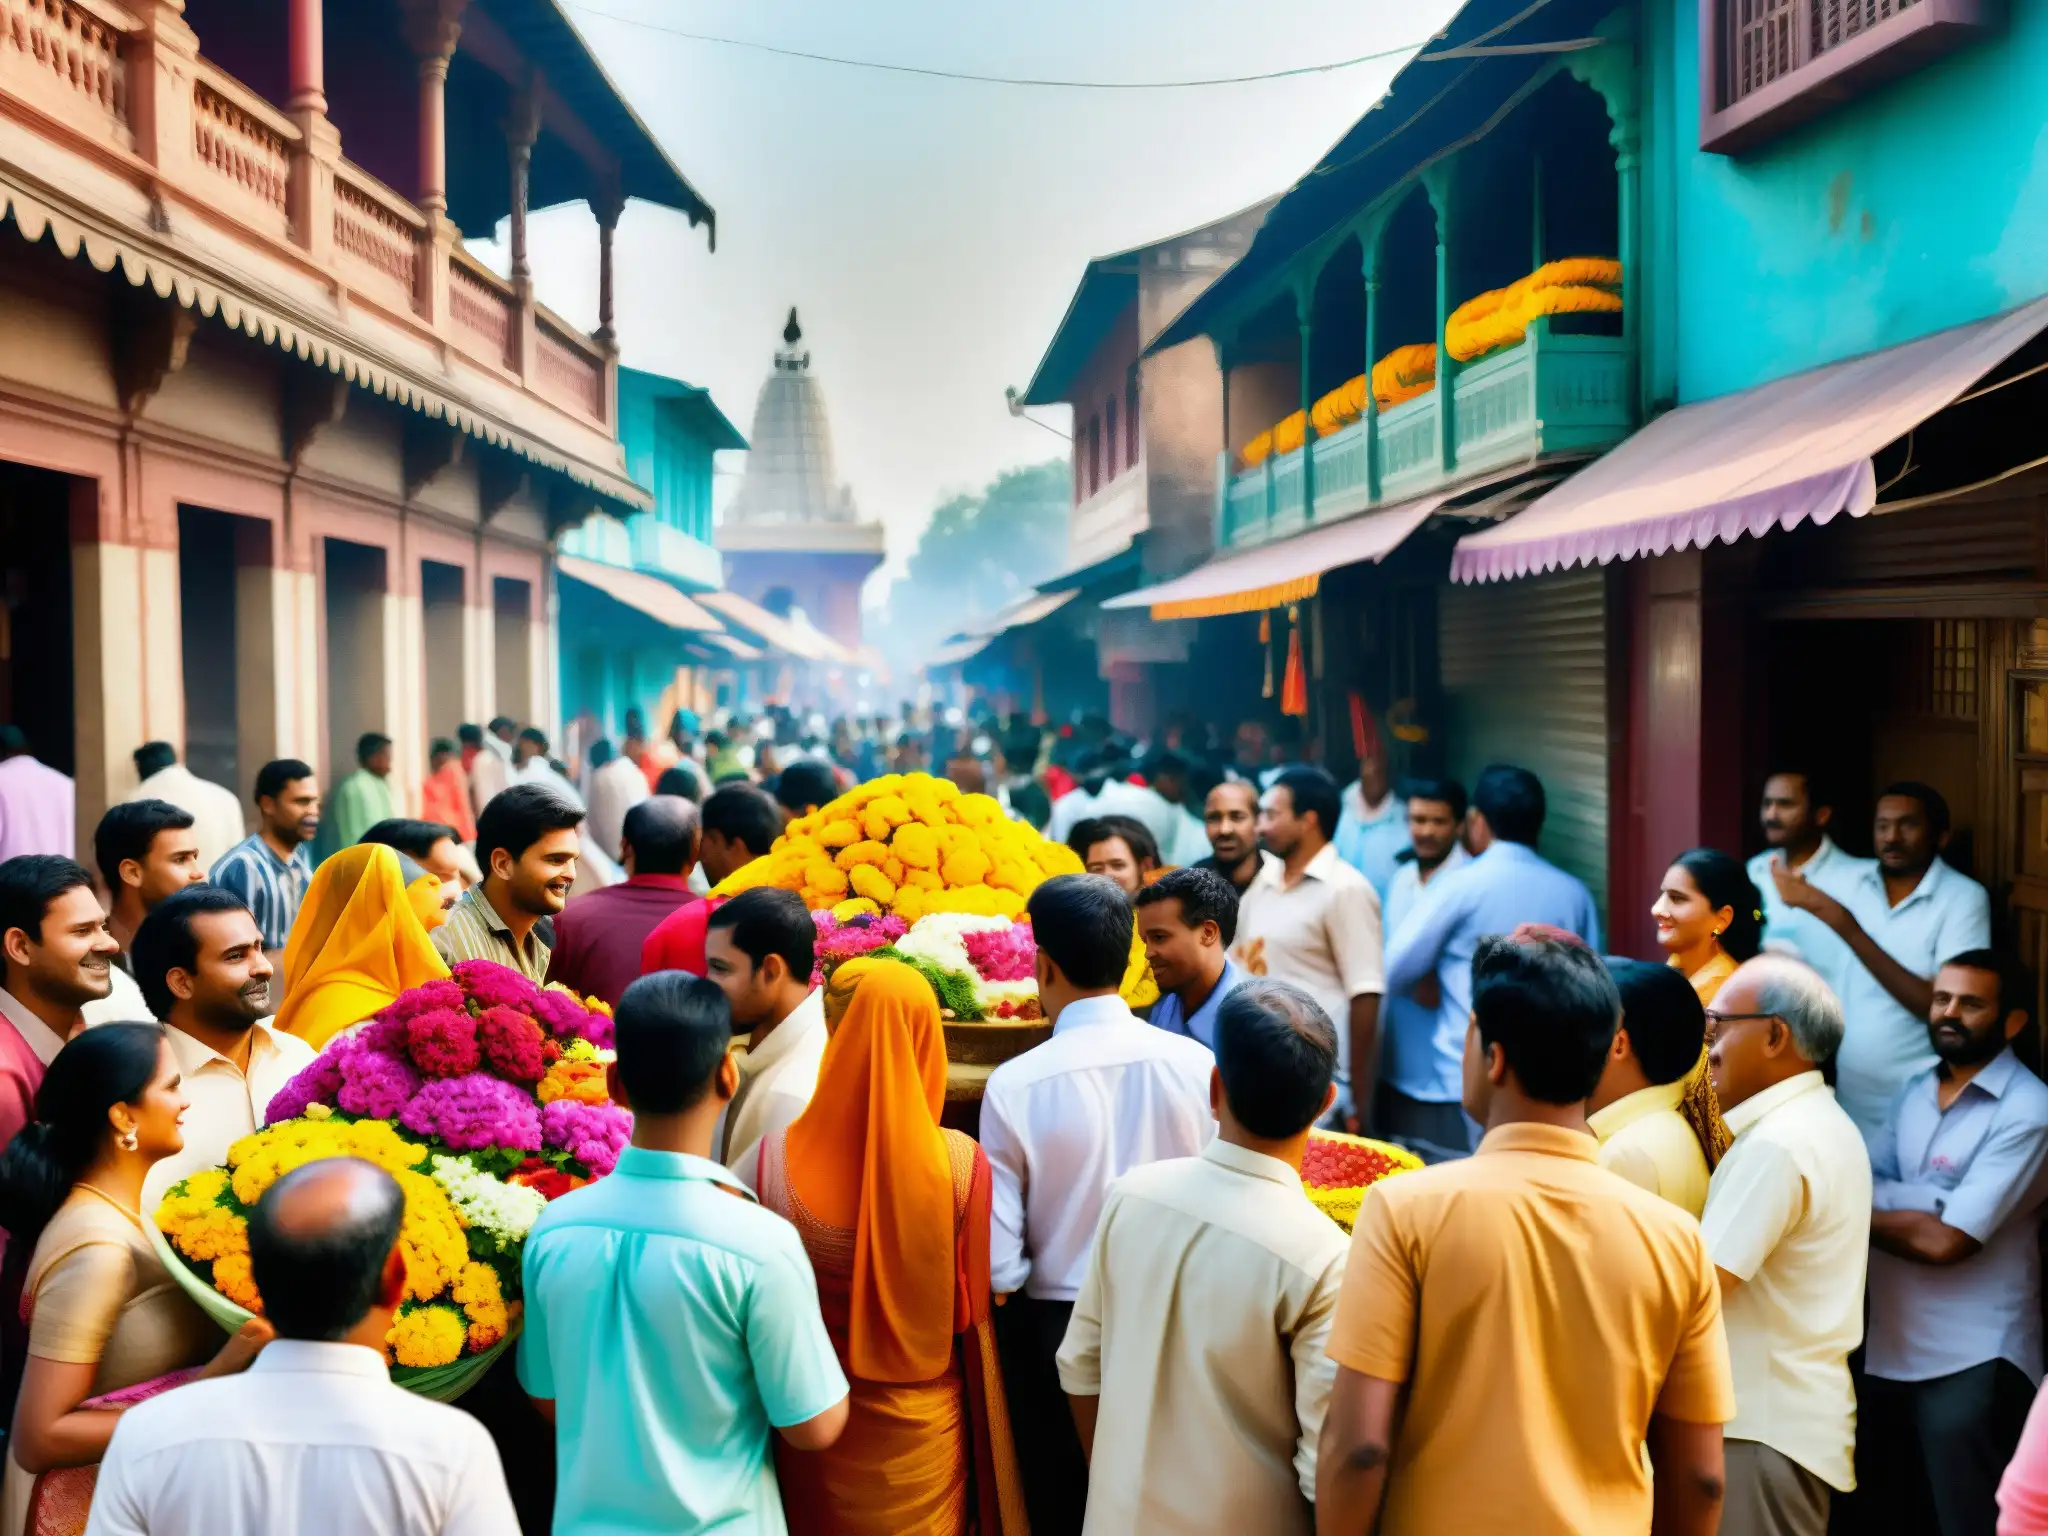 Colorida calle india con personas en rituales religiosos, apariciones de deidades hinduismo y arquitectura detallada